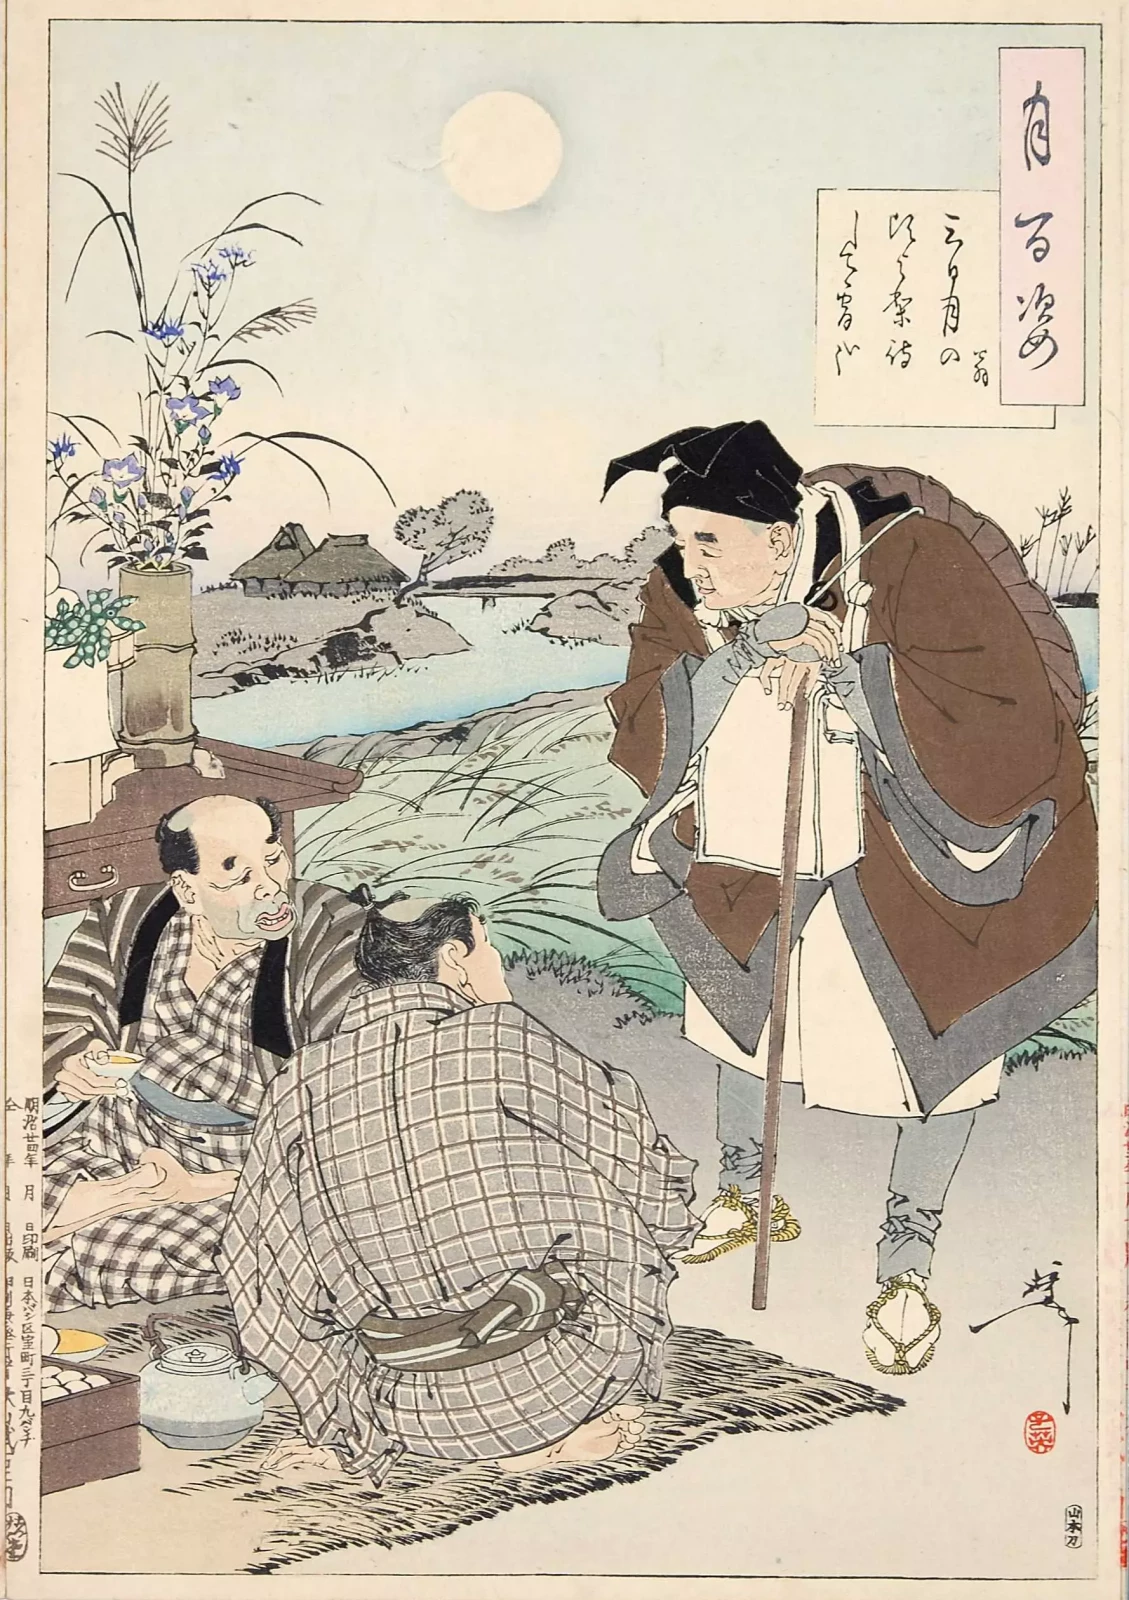 Matsuo Bashō par Tsukioka Yoshitoshi, 1891